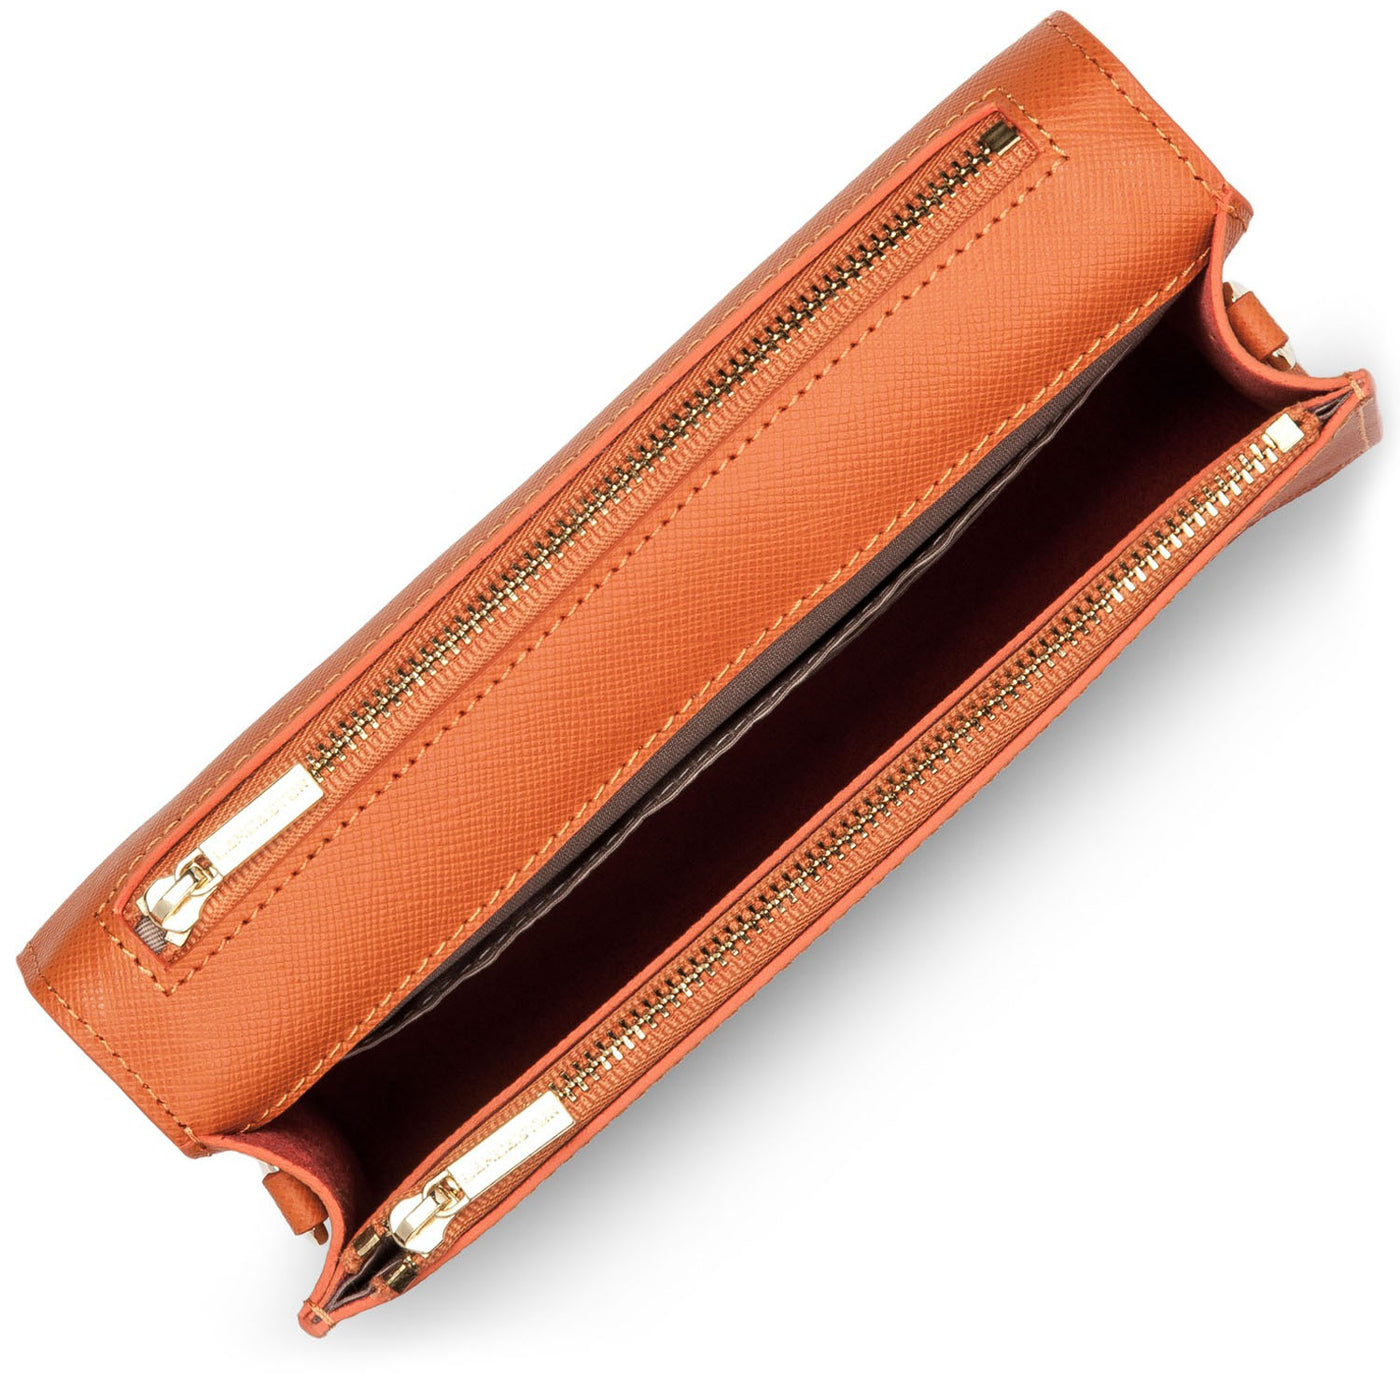 petit sac trotteur - saffiano signature #couleur_orange